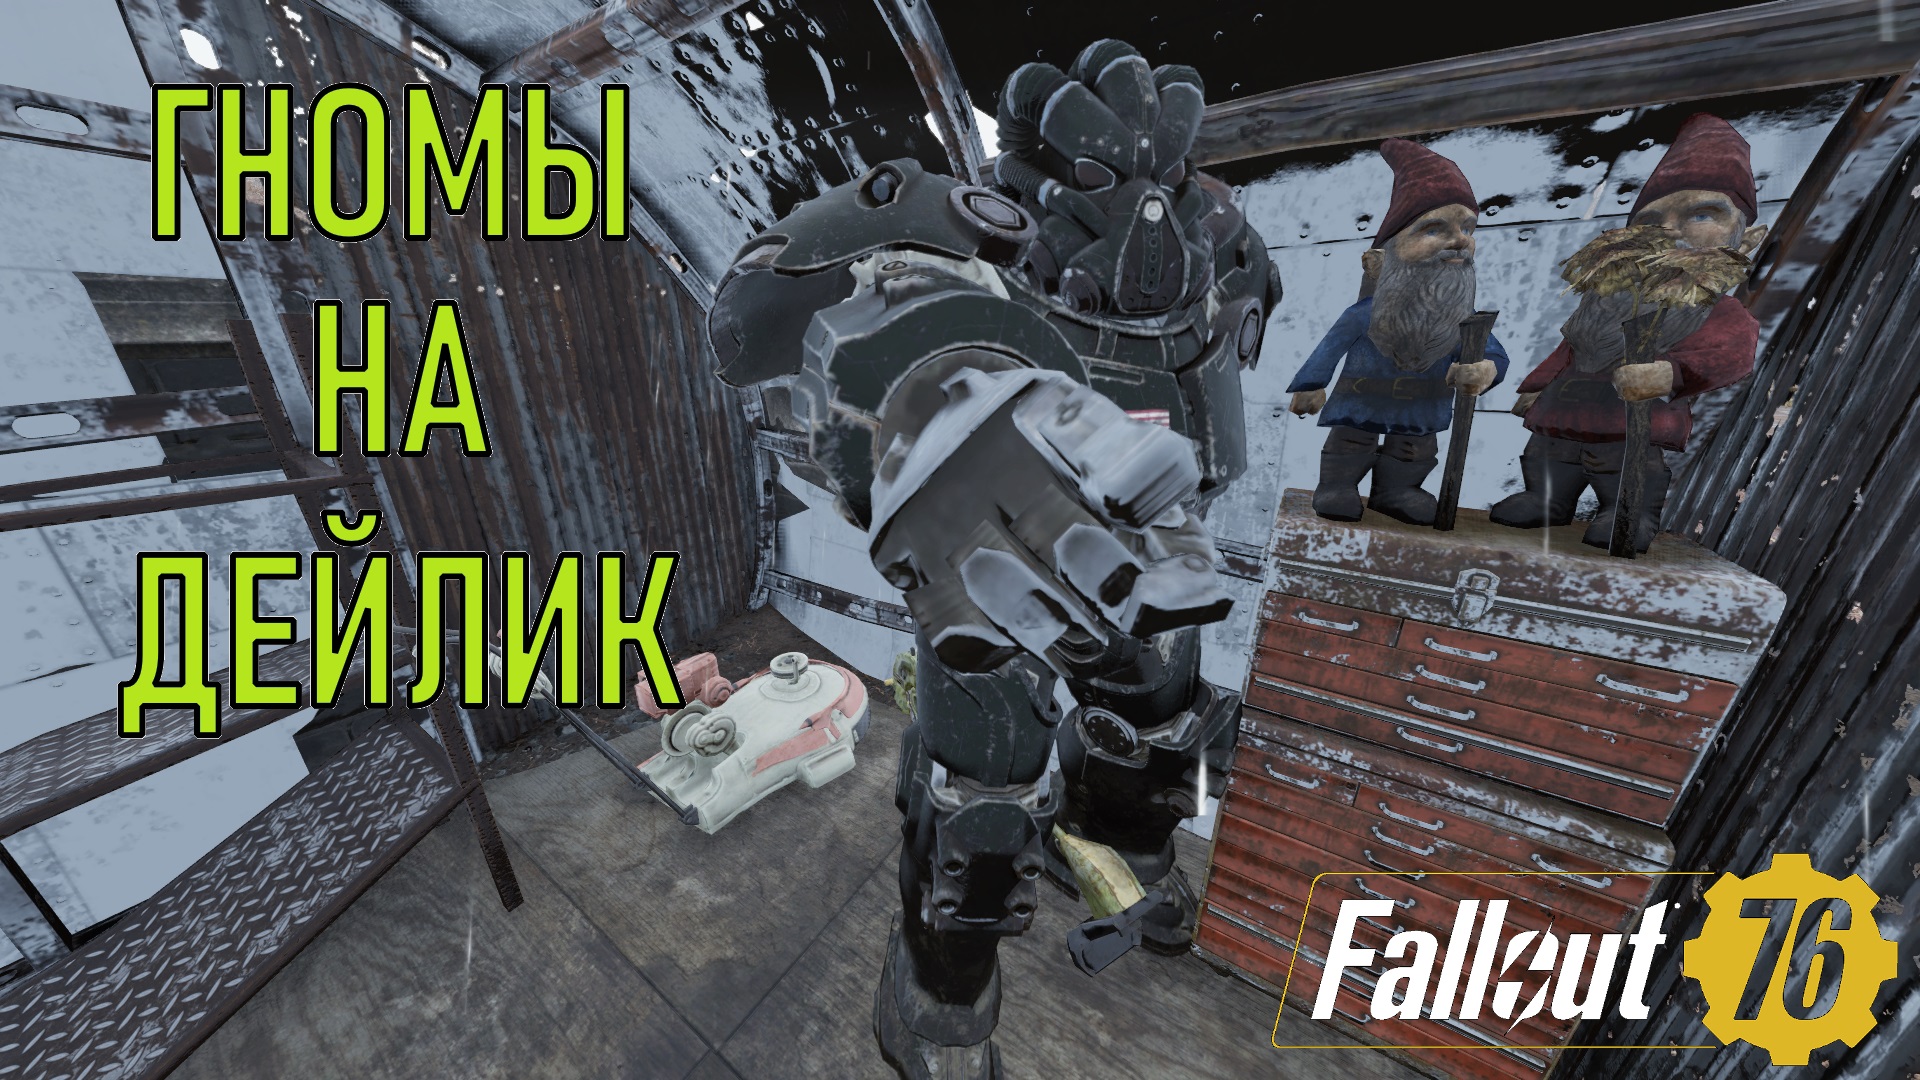 Fallout 76 Гномы на дейлик